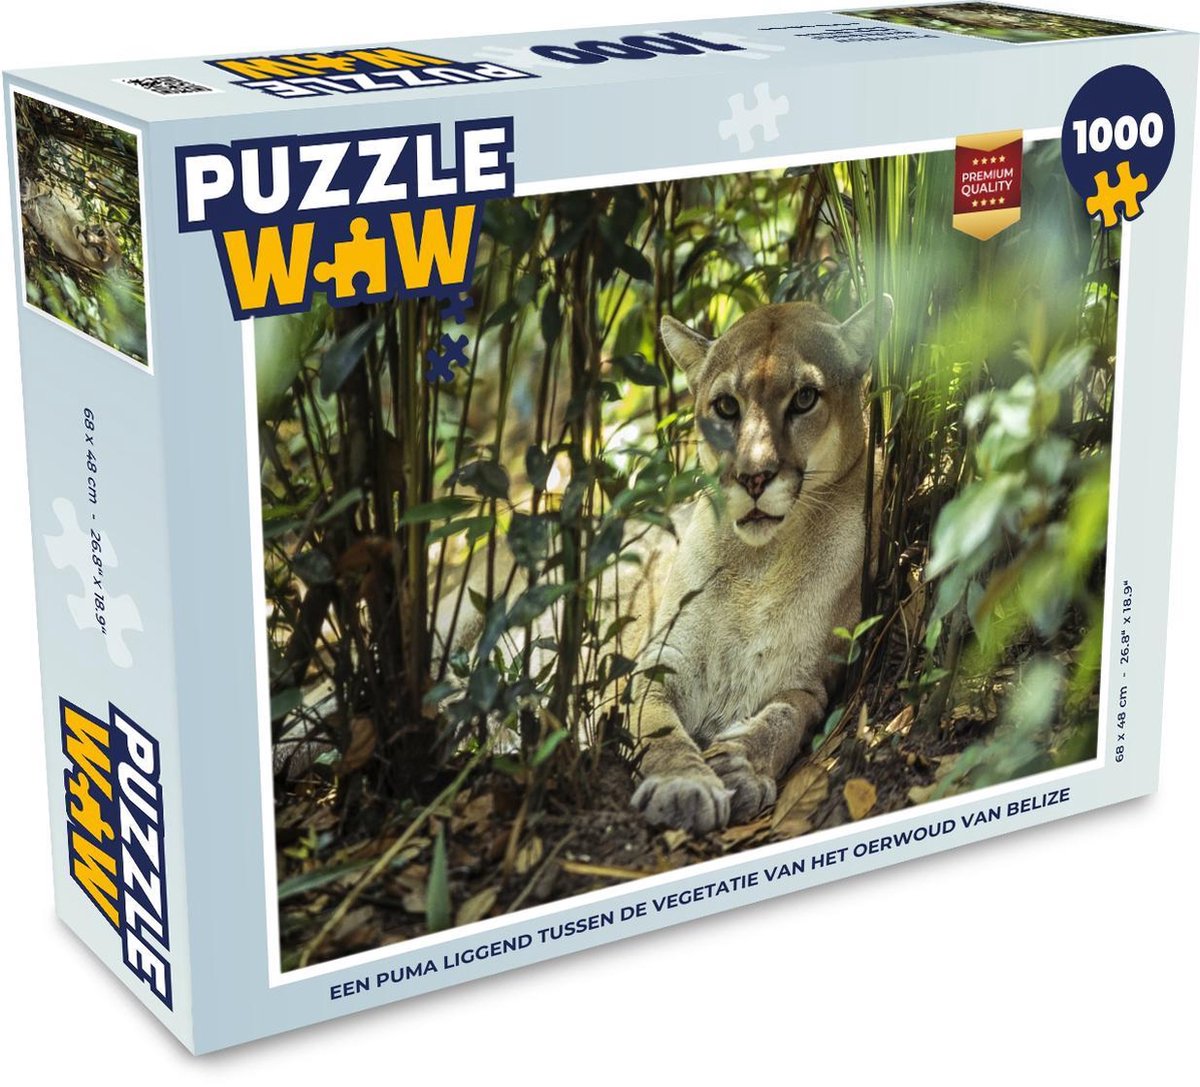 Afbeelding van product Puzzel 1000 stukjes volwassenen Puma 1000 stukjes - Een puma liggend tussen de vegetatie van het oerwoud van Belize - PuzzleWow heeft +100000 puzzels